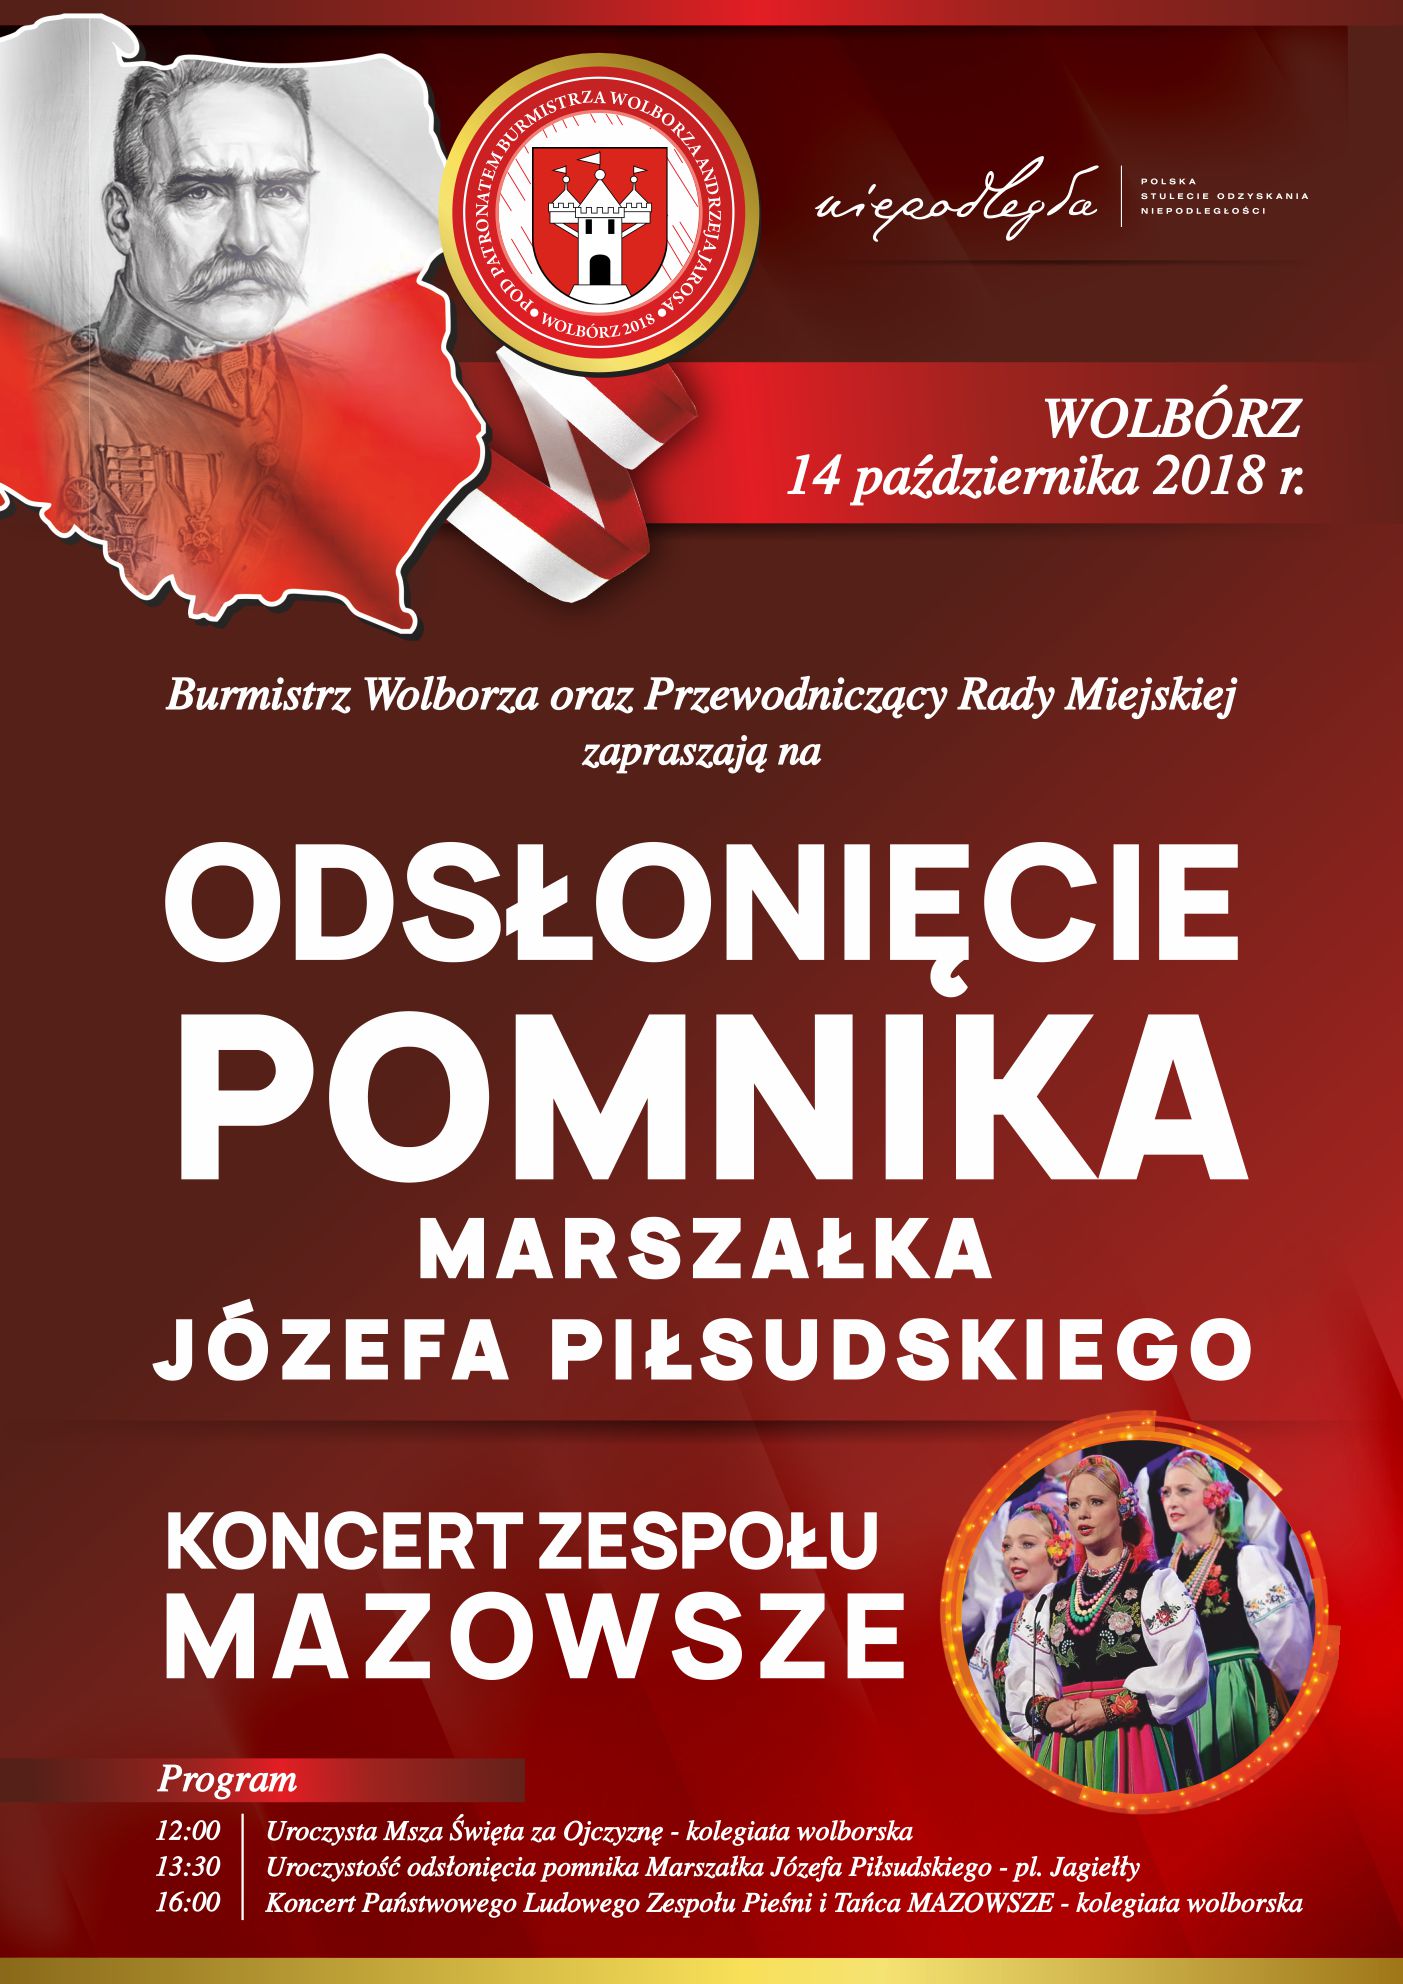 Photo of Koncert Mazowsza i odsłonięcie pomnika w Wolborzu